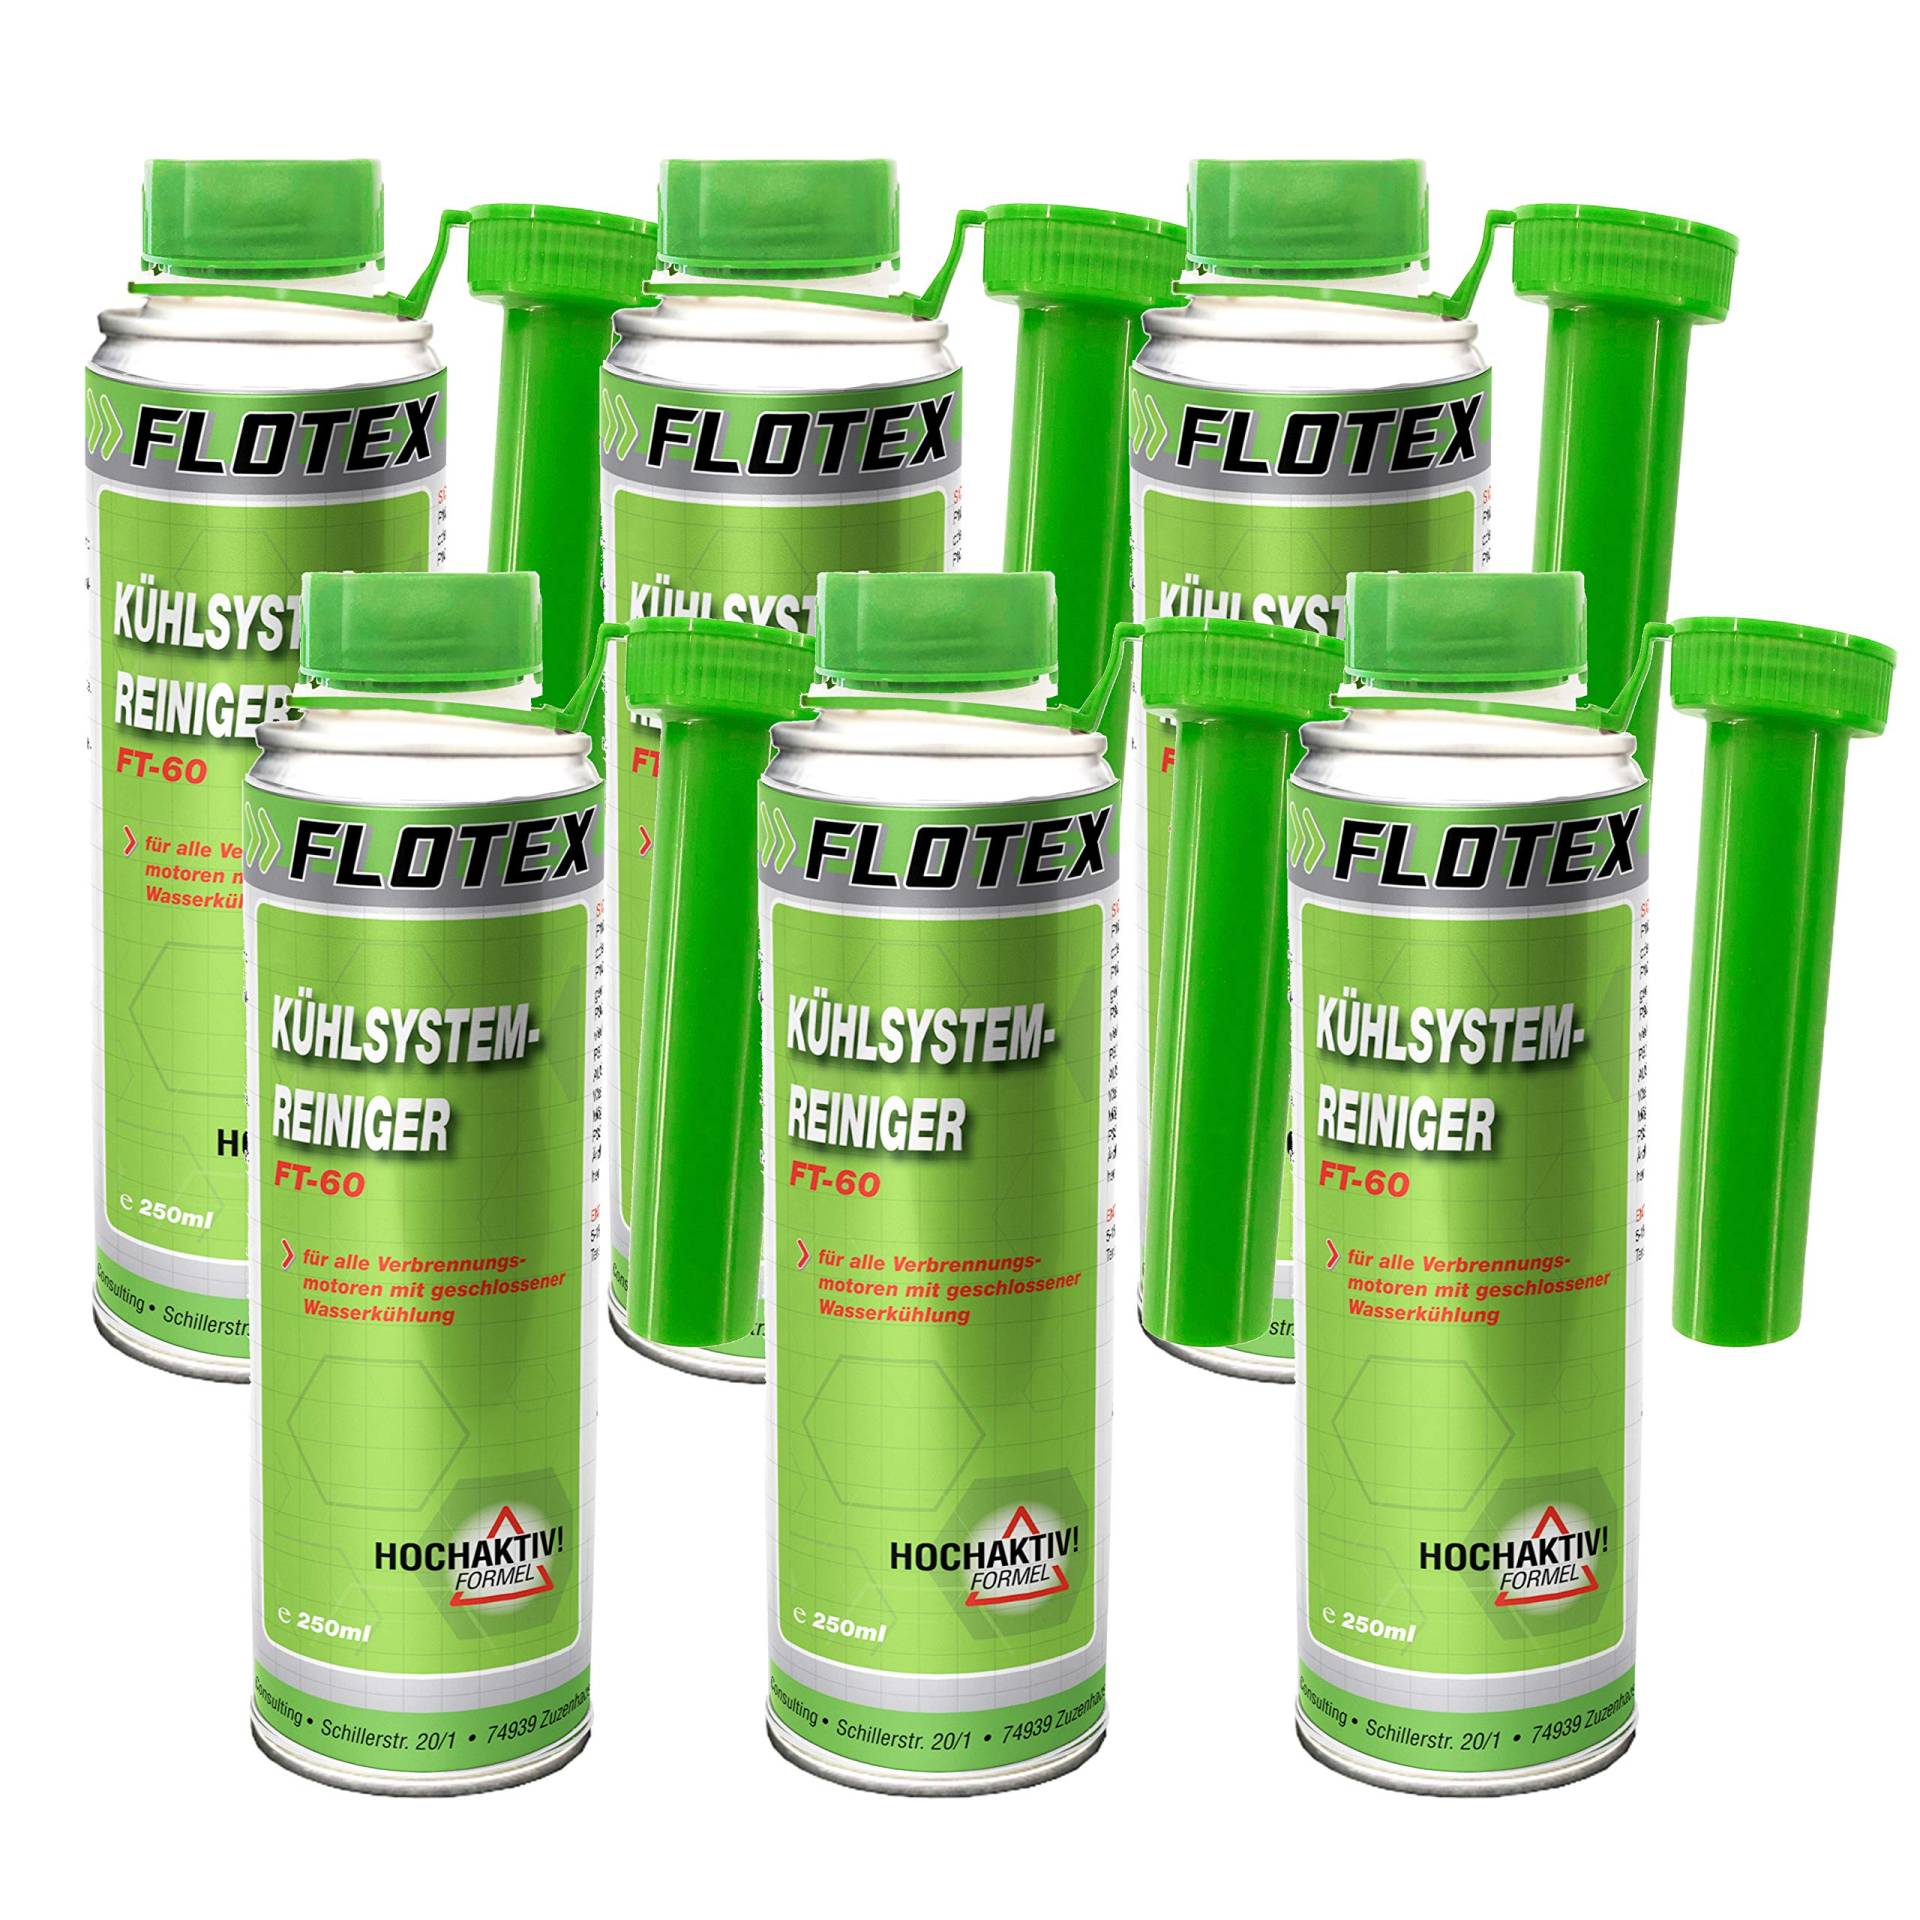 Flotex Kühlsystemreiniger, 6 x 250ml Additiv für optimale Motortemperatur und Betriebssicherheit von Flotex